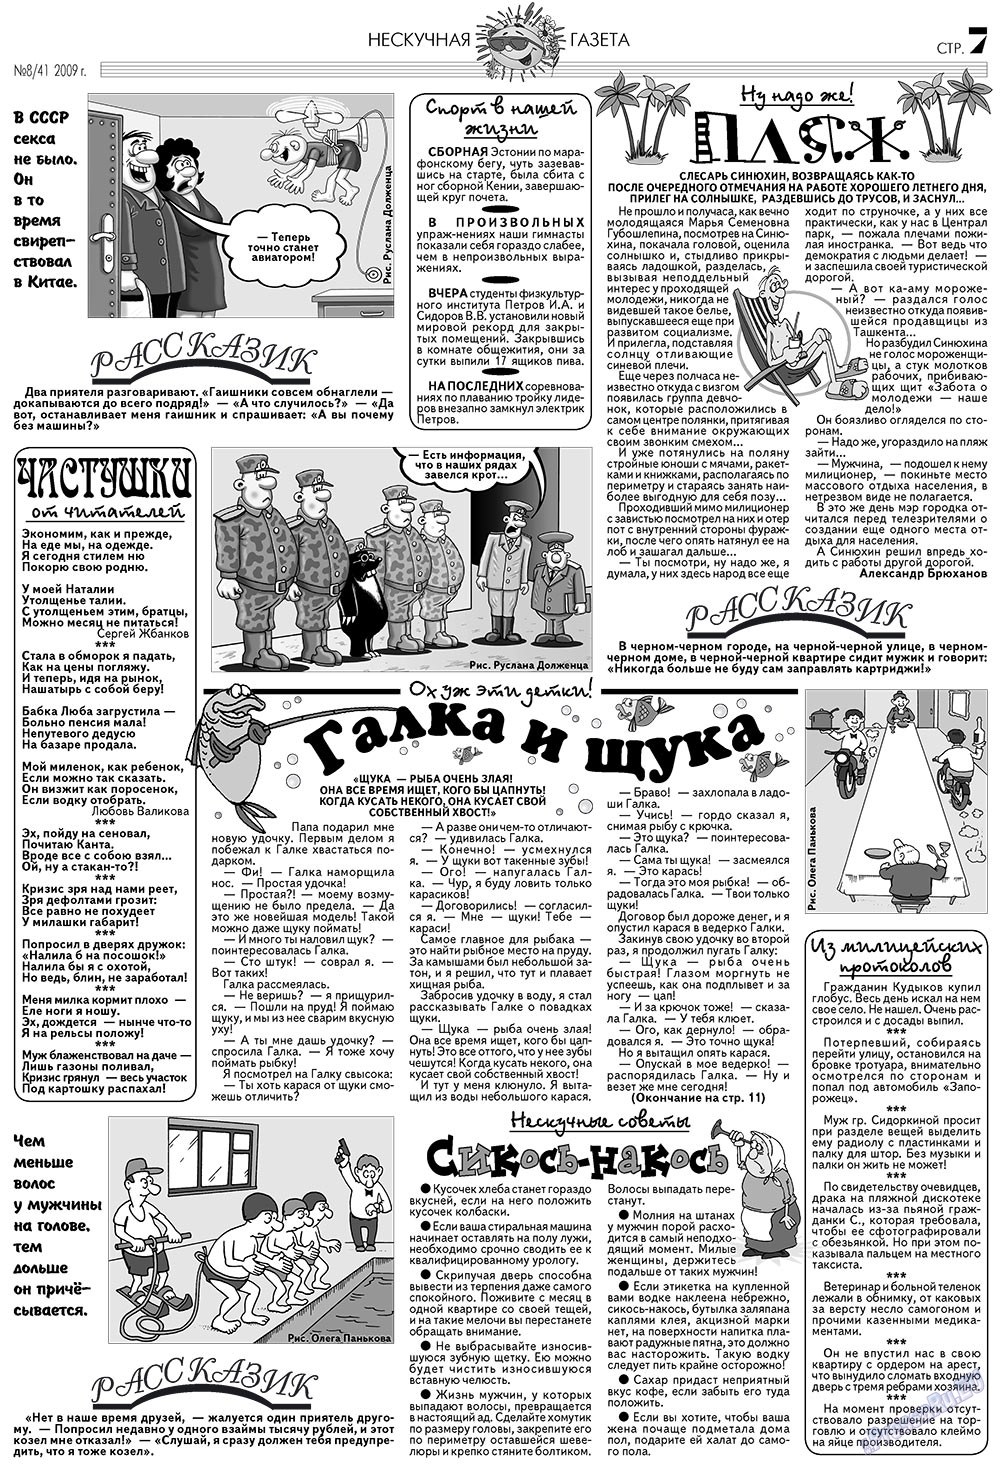 Нескучная газета, журнал. 2009 №8 стр.7